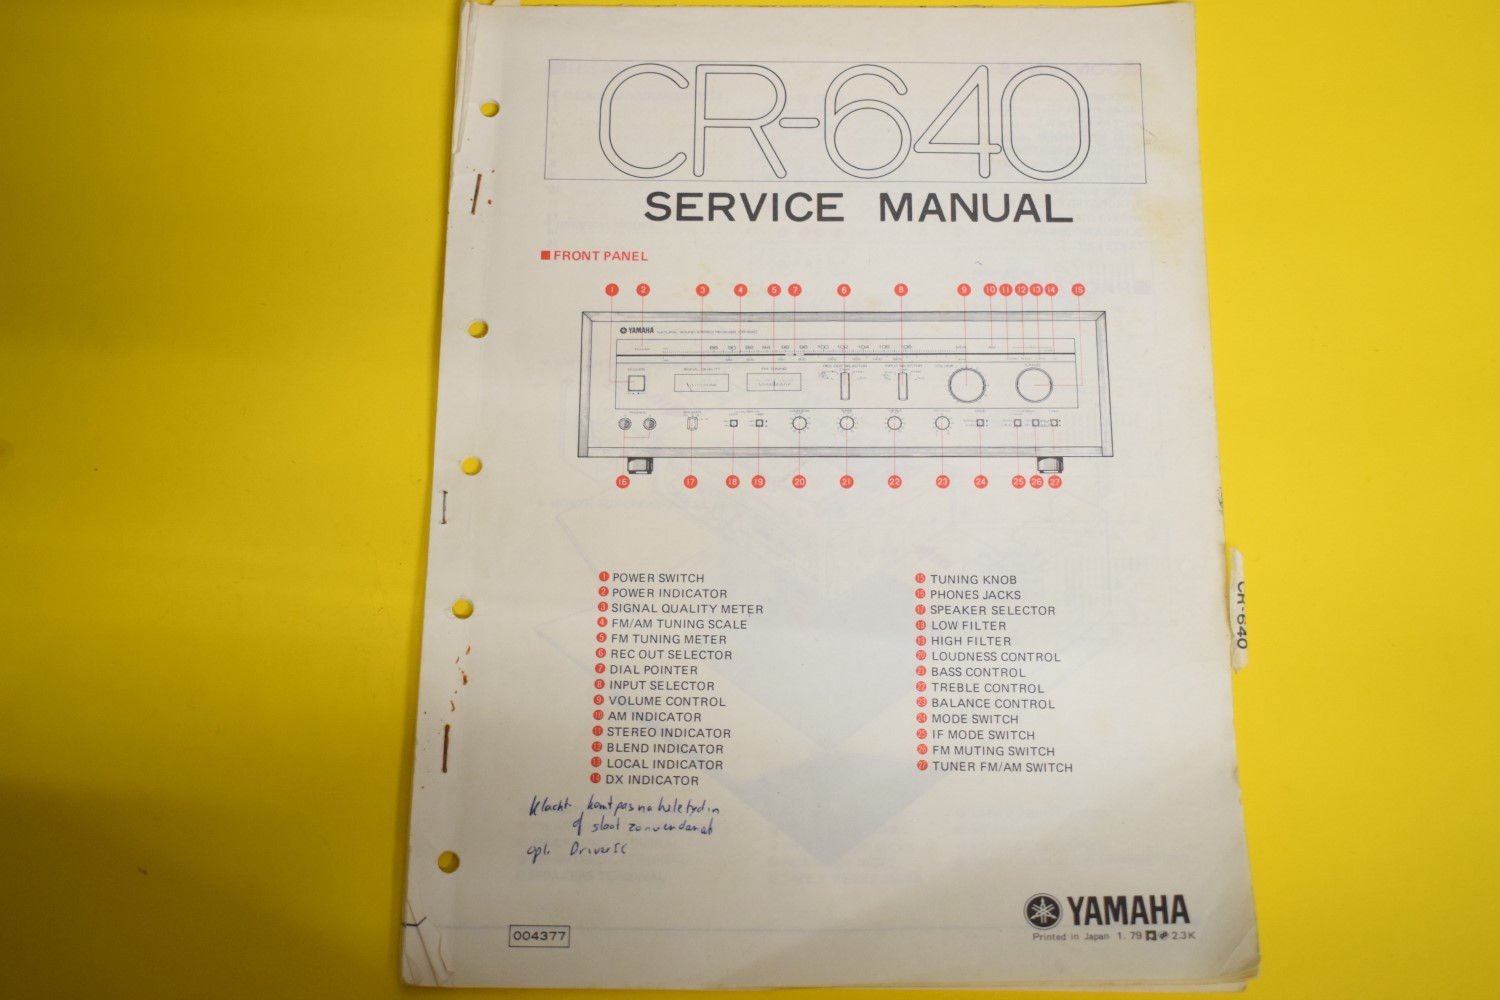 Yamaha CR-640 Receiver Service Manual